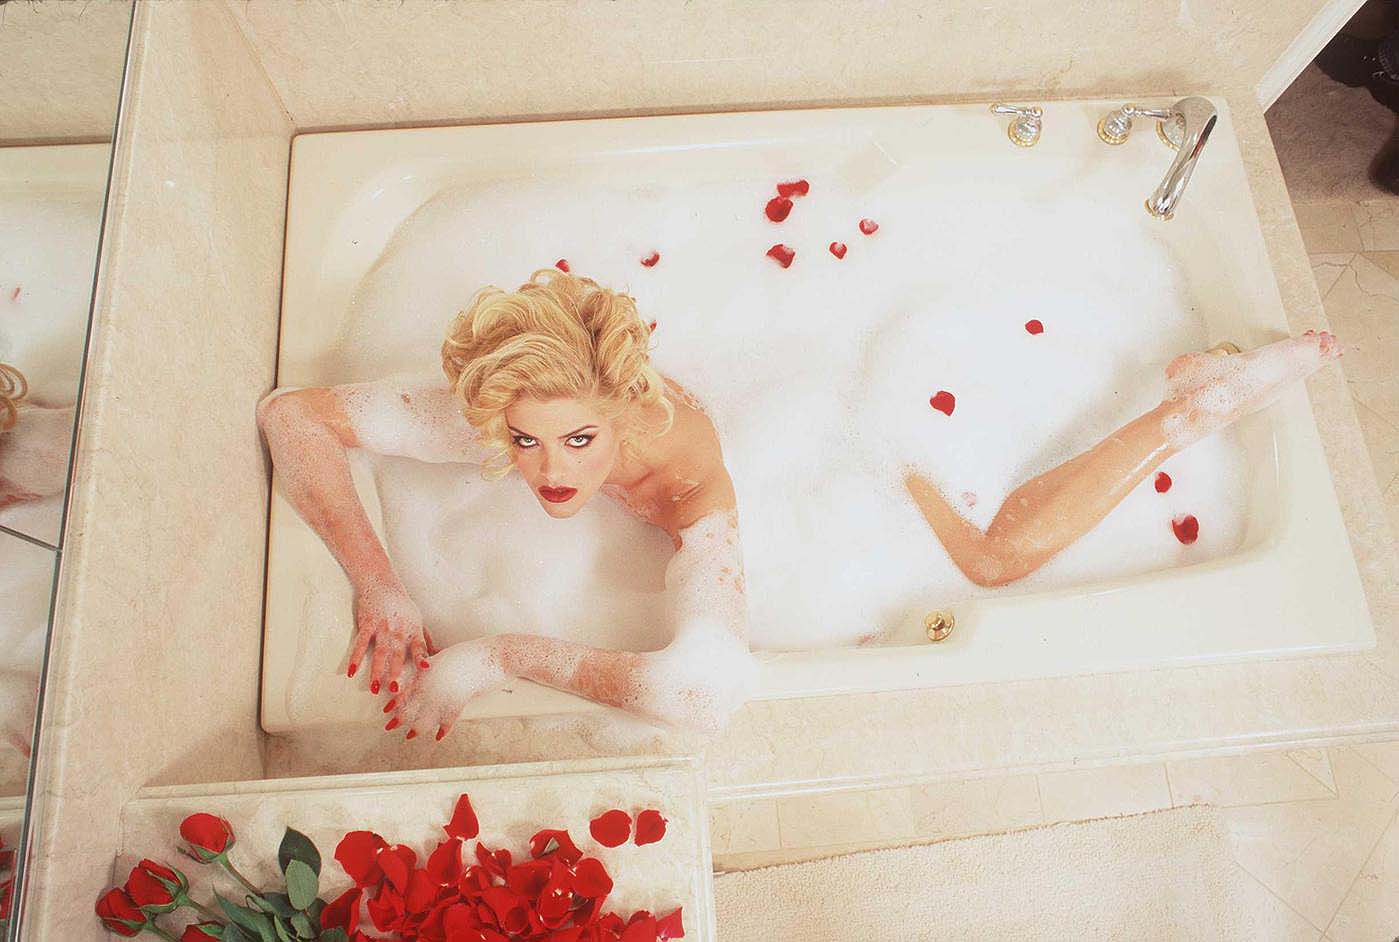 david galgano recommends Anna Nicole Smith Bath